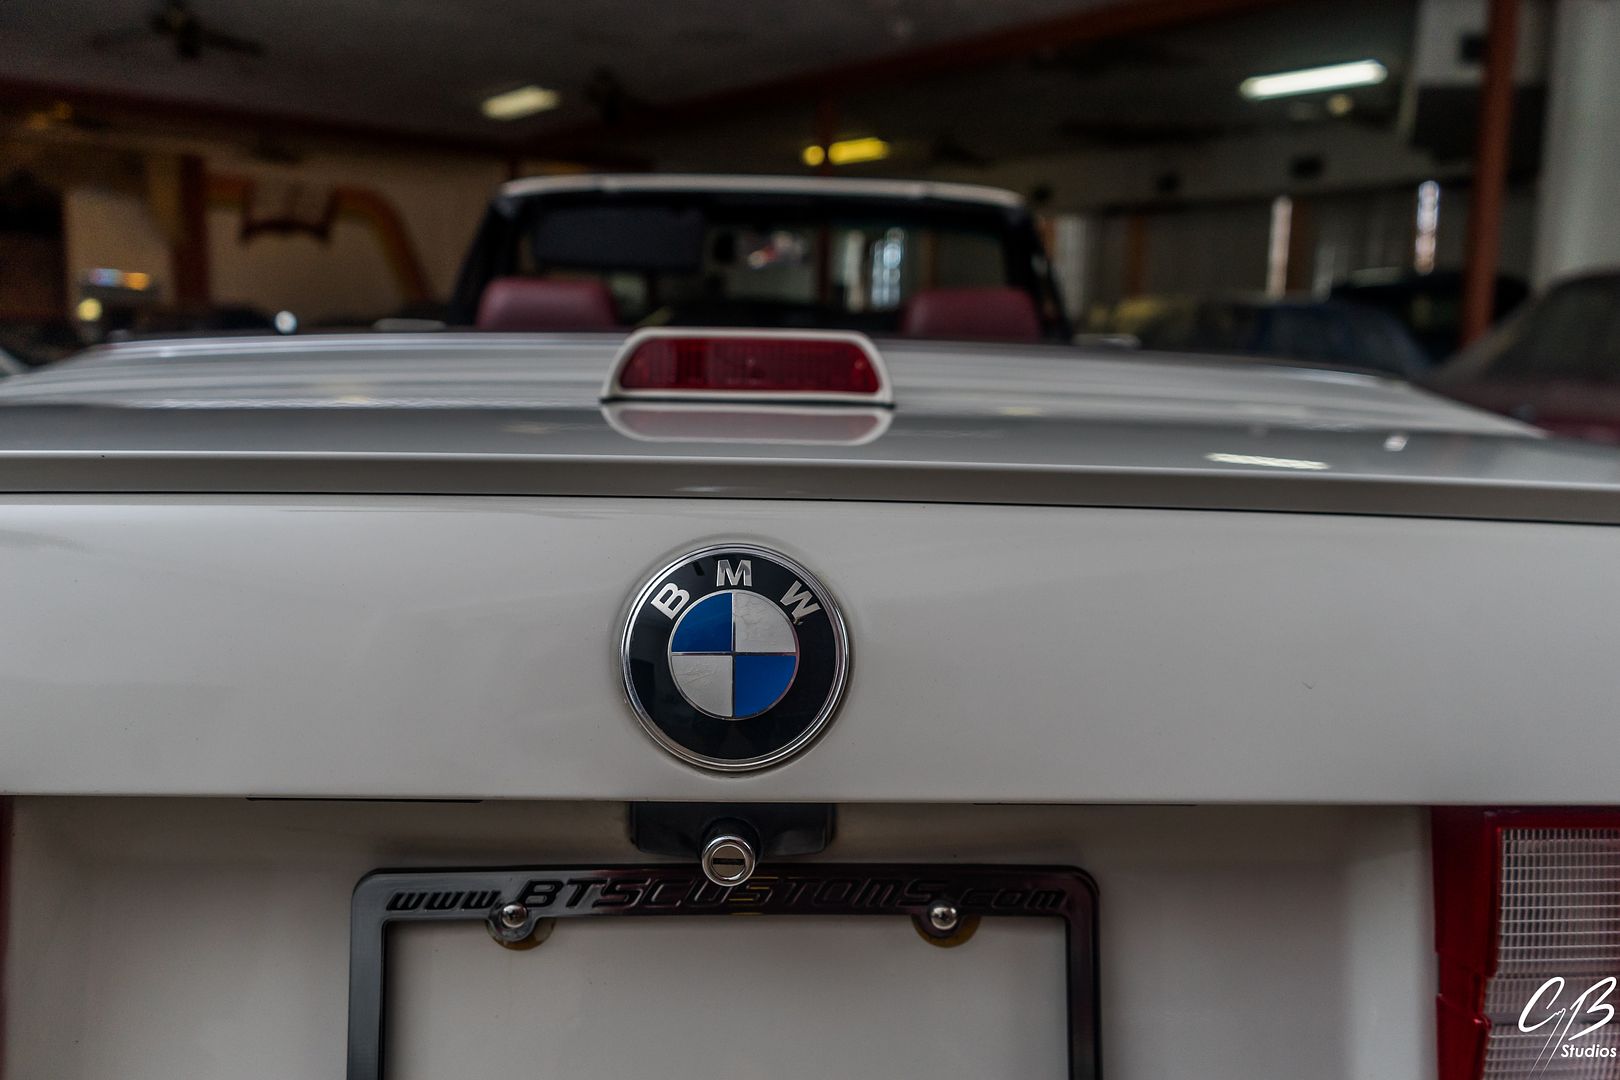  photo BMW325i-44.jpg